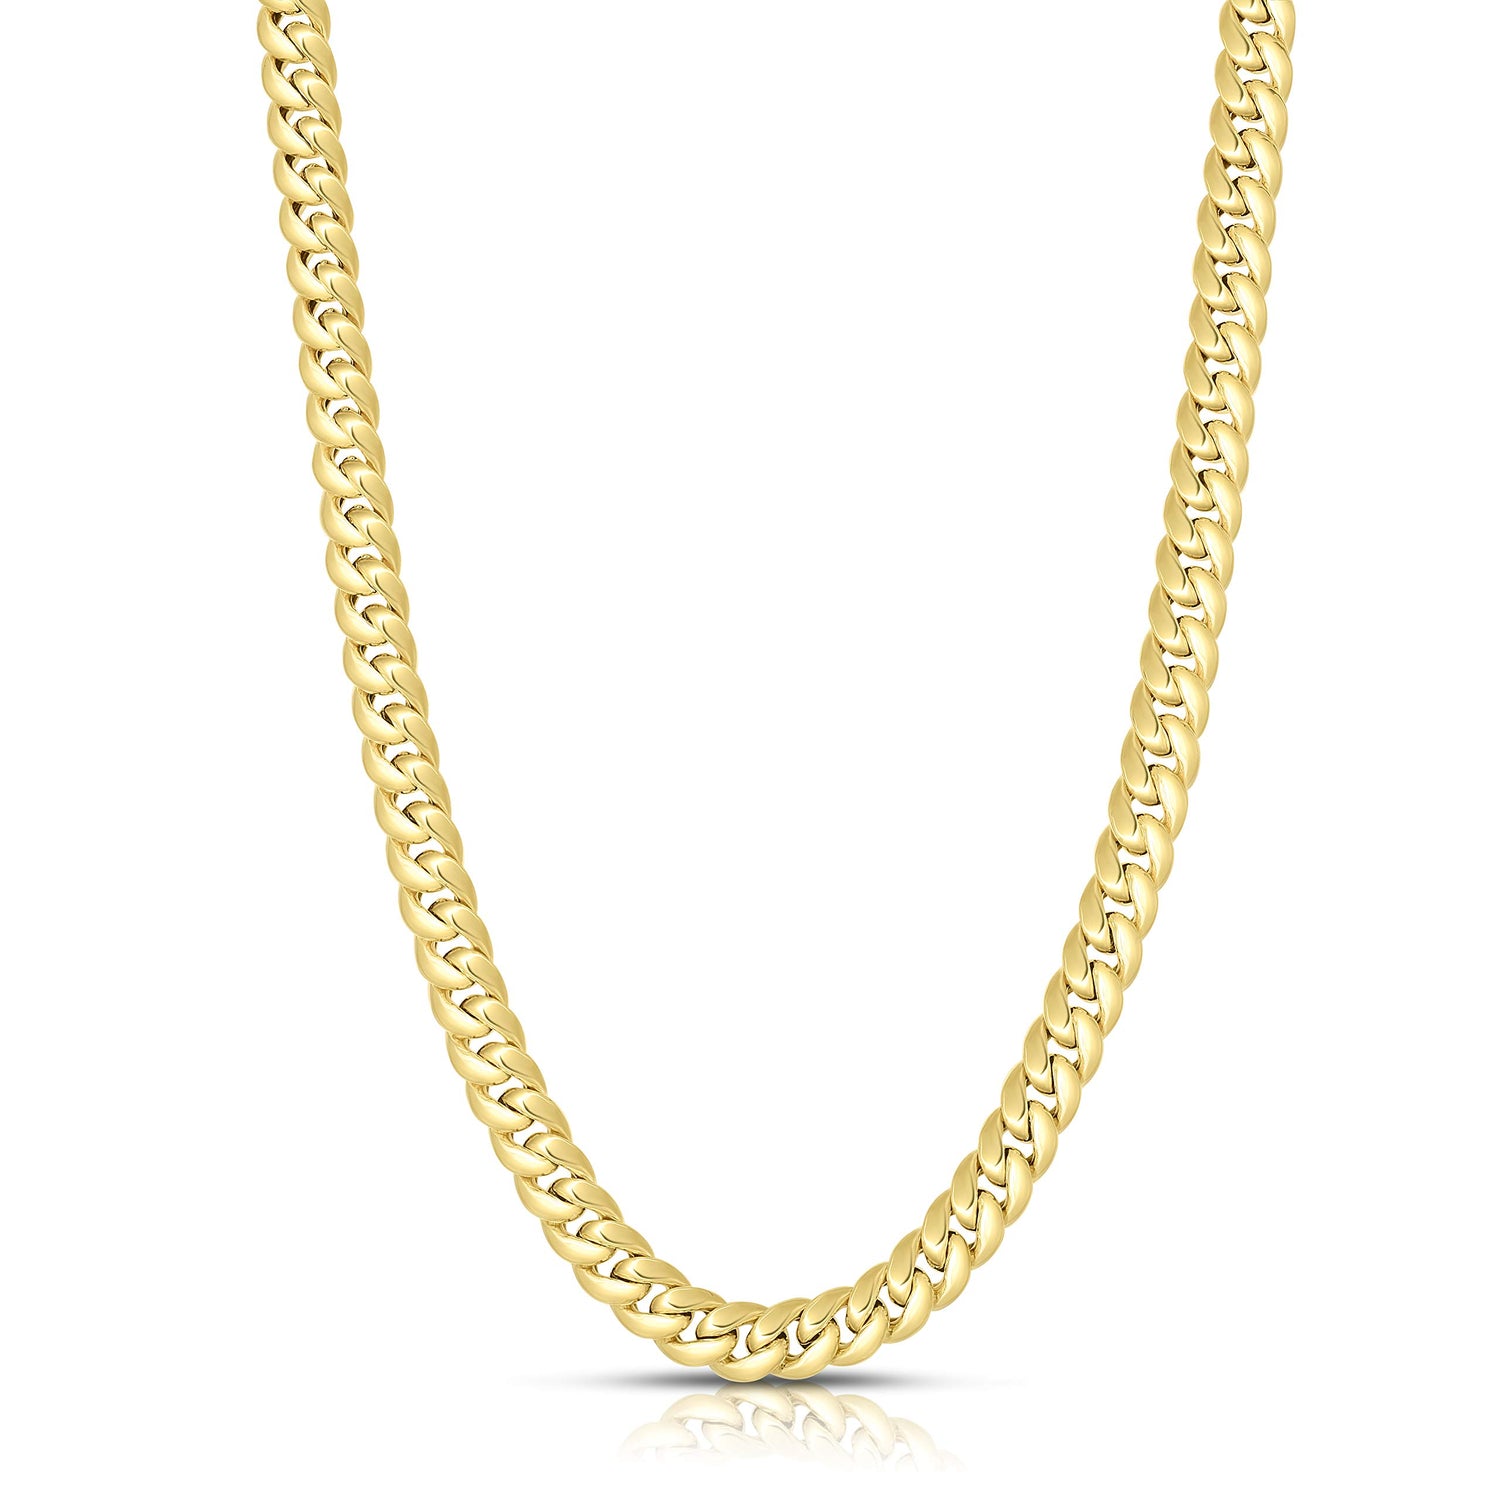 10k Yellow Gold 5.4mm Semi-Lite Miami Cuban Chain Necklace